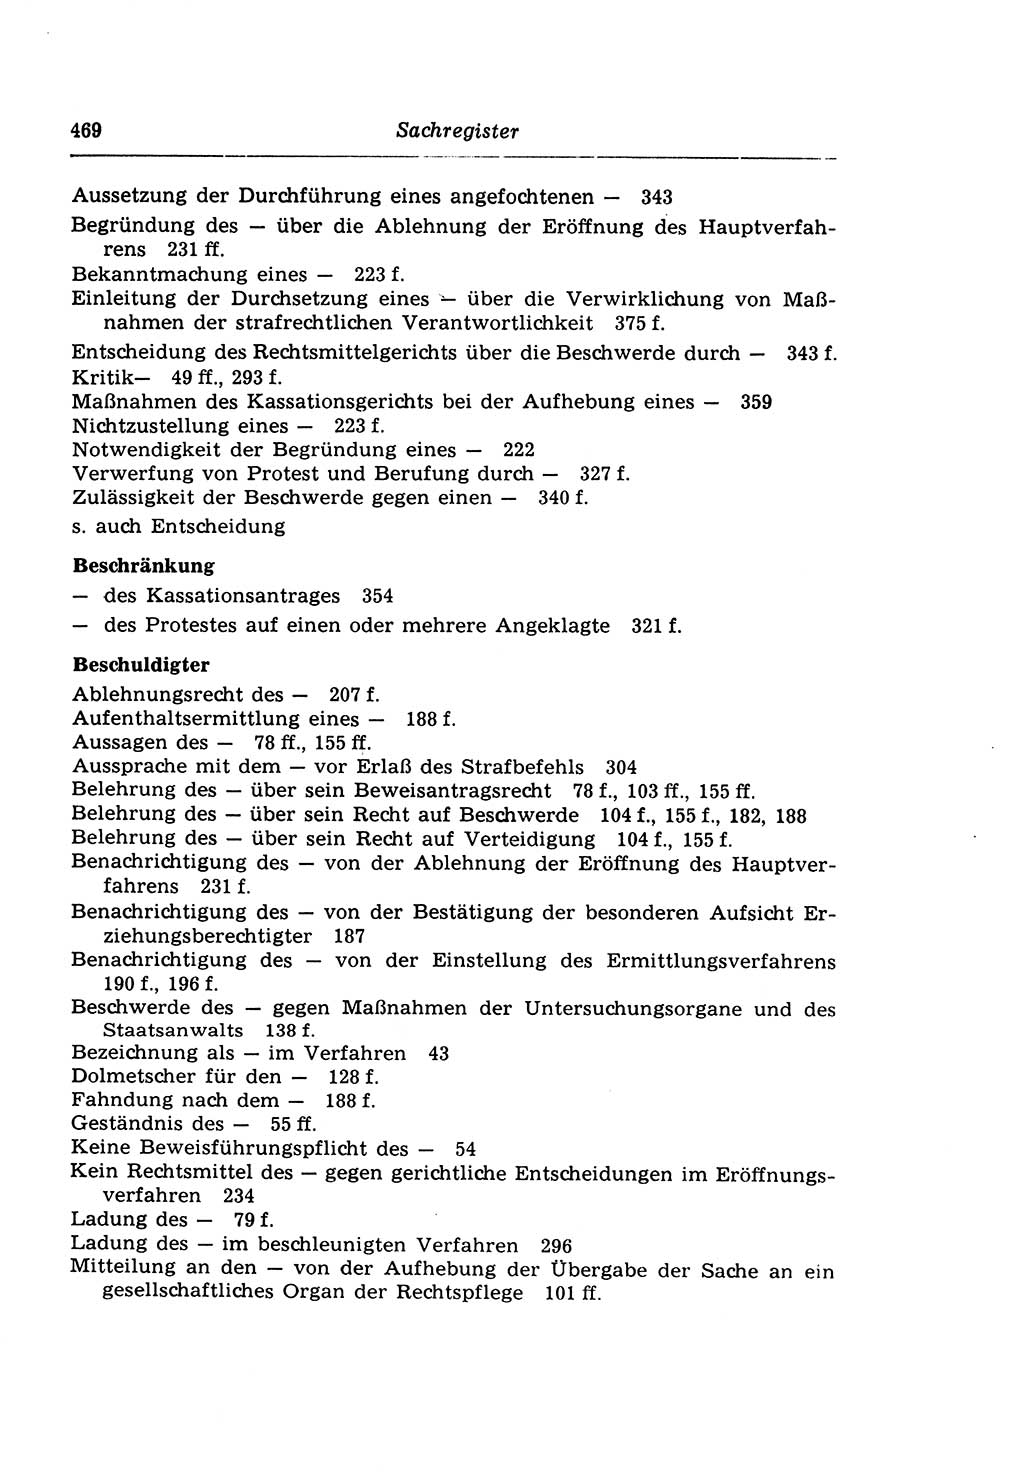 Strafprozeßrecht der DDR (Deutsche Demokratische Republik), Lehrkommentar zur Strafprozeßordnung (StPO) 1968, Seite 469 (Strafprozeßr. DDR Lehrkomm. StPO 19688, S. 469)